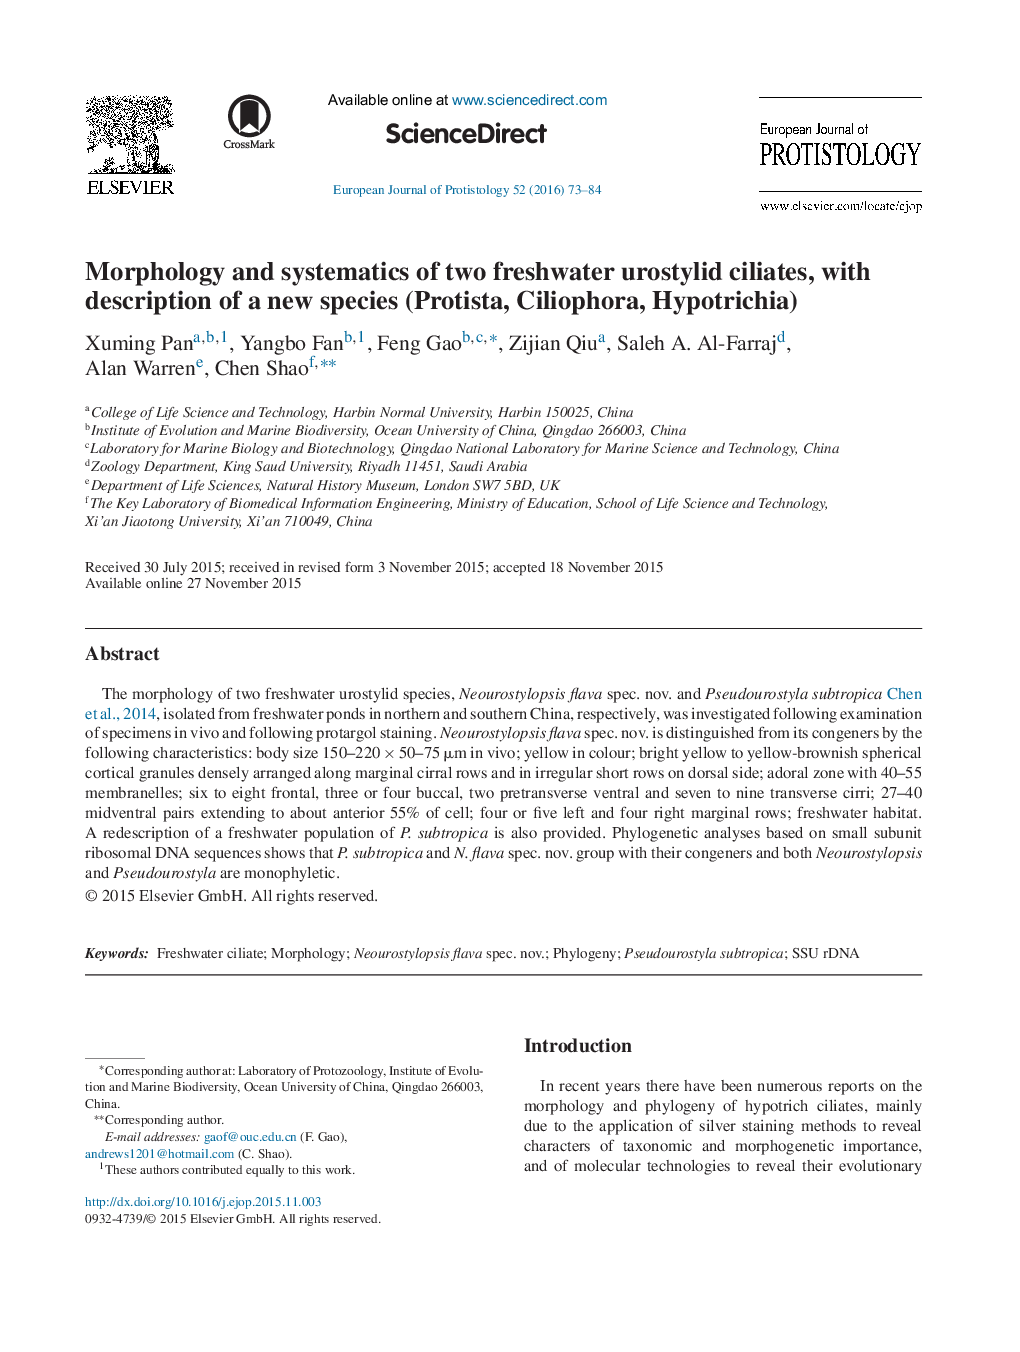 مورفولوژی و سیستماتیک دو سیلوستر یروستیلد آب شیرین با توصیف یک گونه جدید (پروتیستا، سیلوفورا، هیپوتریچیا) 